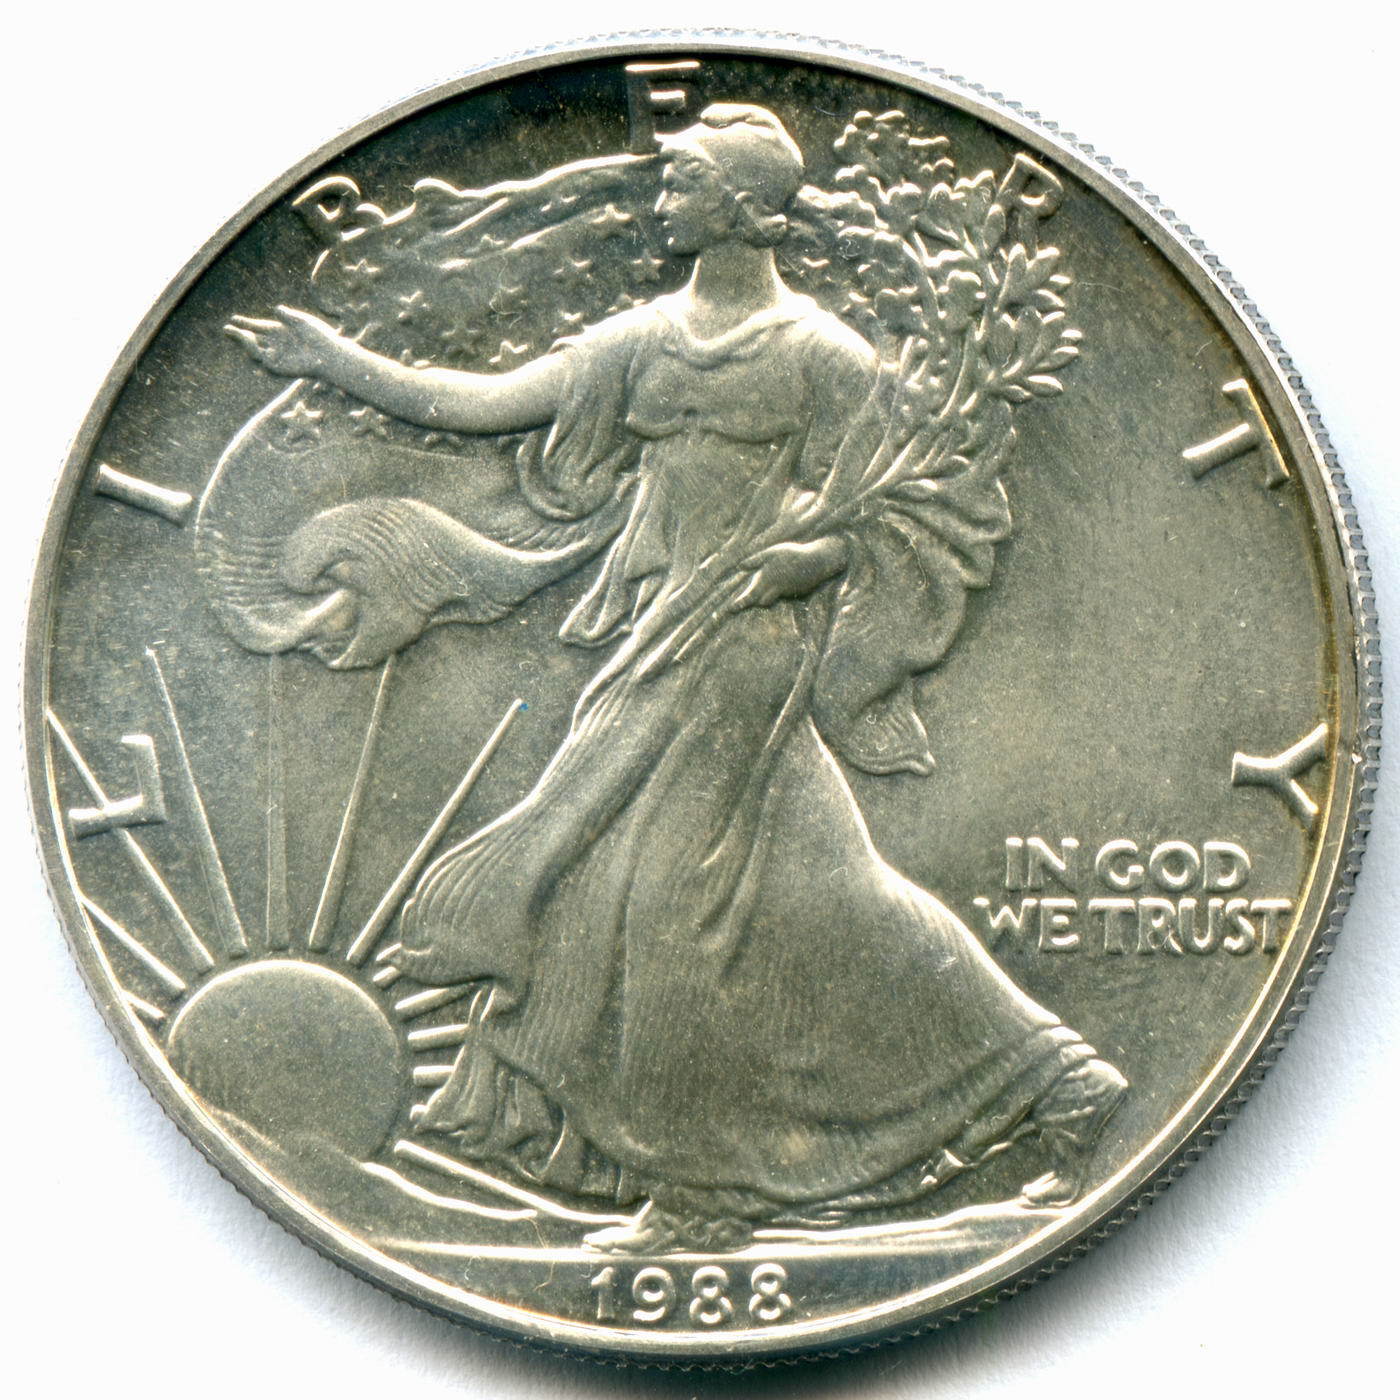 Шагающая Свобода 1 доллар США серебро. Монеты США 1787 2021 годов. 1 Доллар США 1995 серебро шагающая Свобода. Монета США серебро 1 доллар 2007 Свобода идущая цветная.